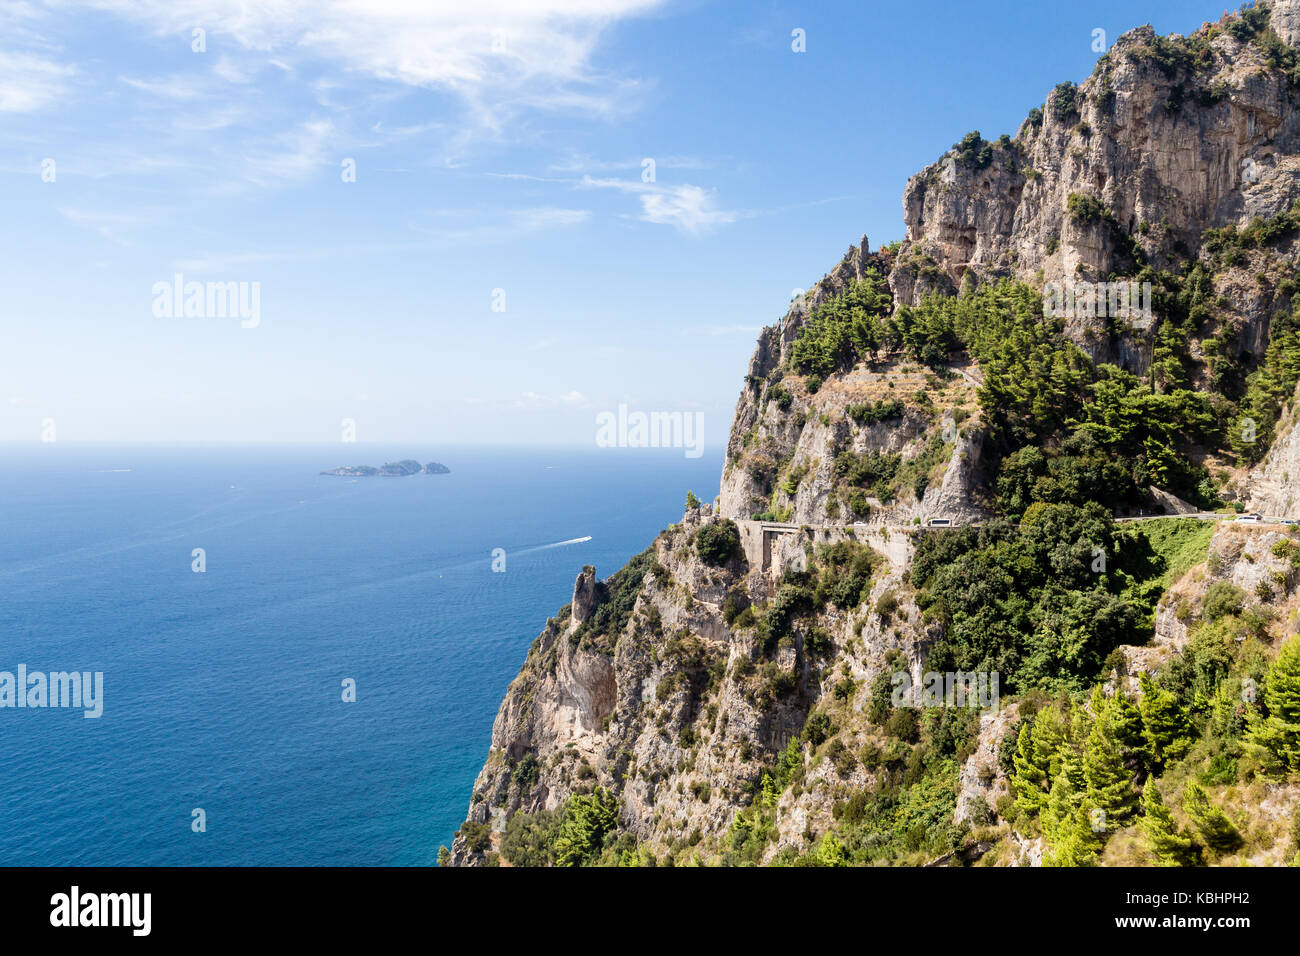 Costa Amalfitana, Italy. Europe. Stock Photo